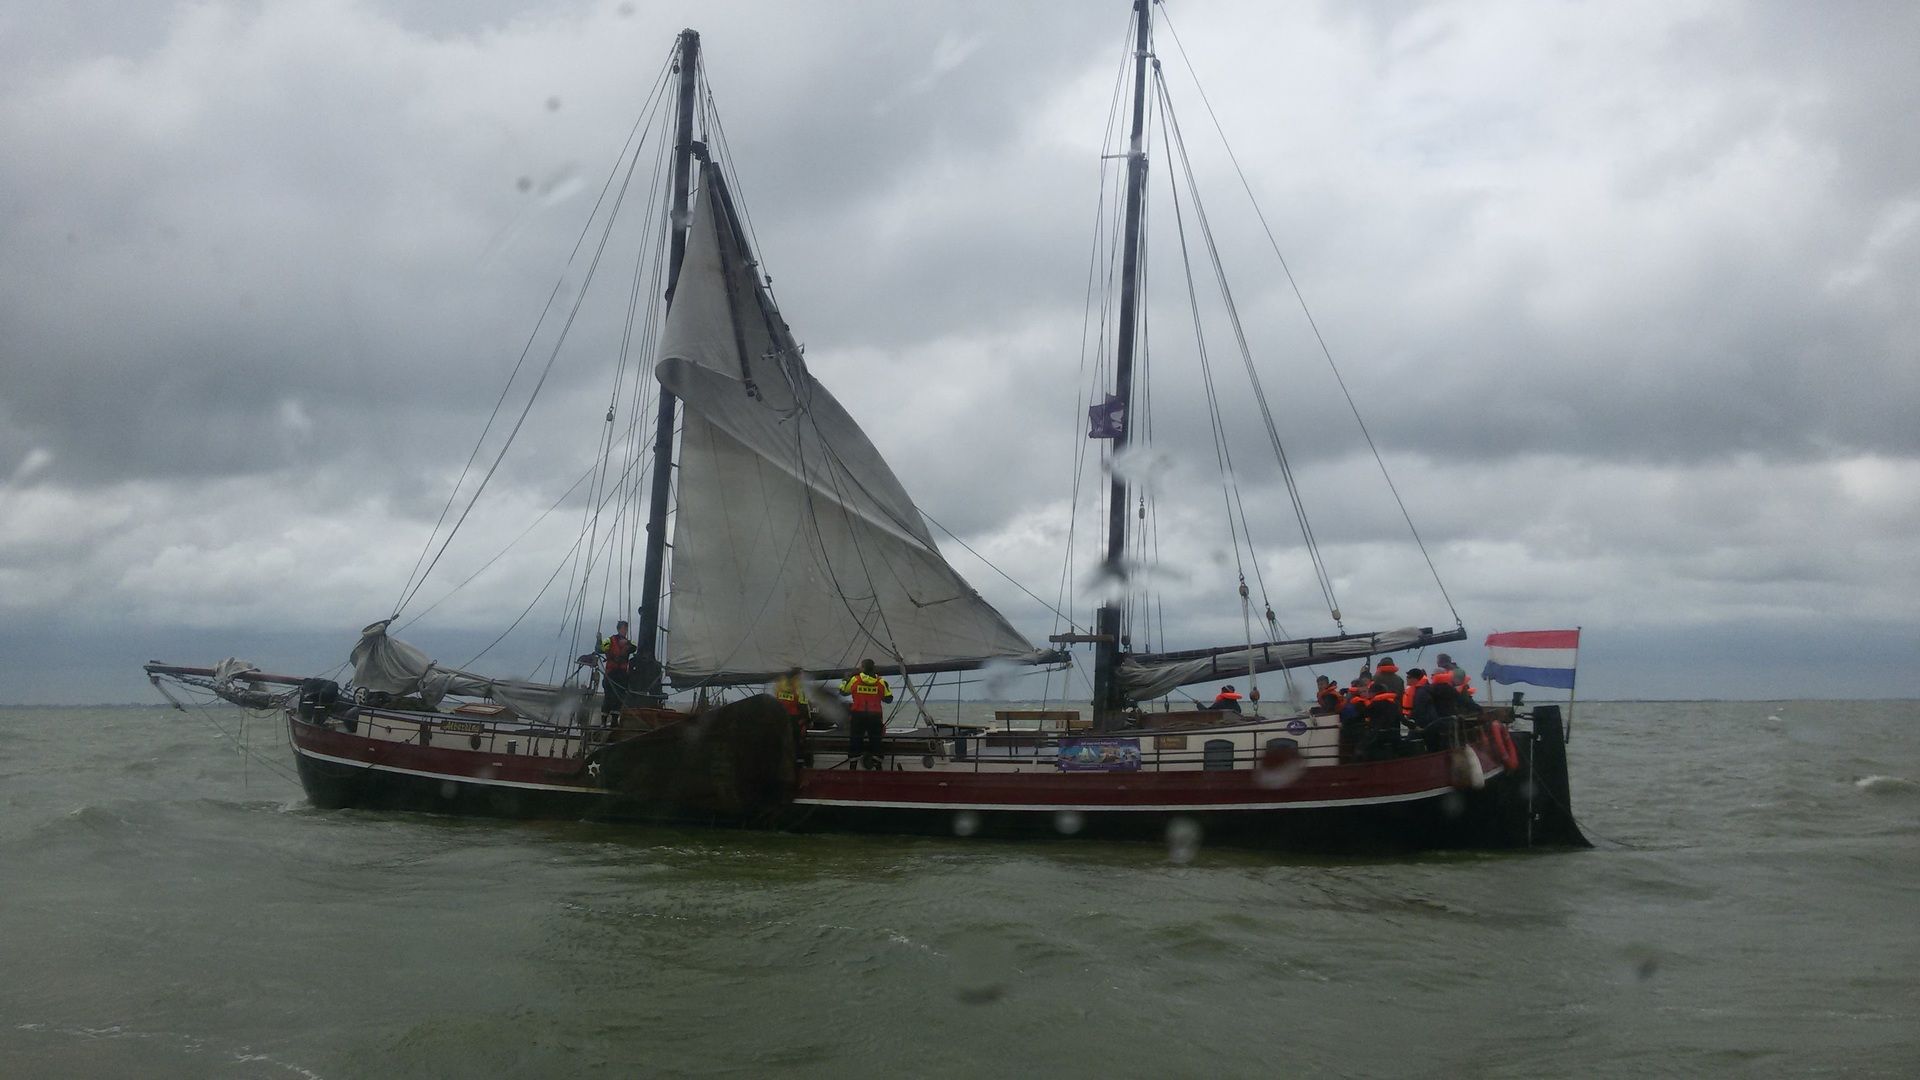 Charterschip met gebroken mast op het IJsselmeer. KNRM Enkhuizen